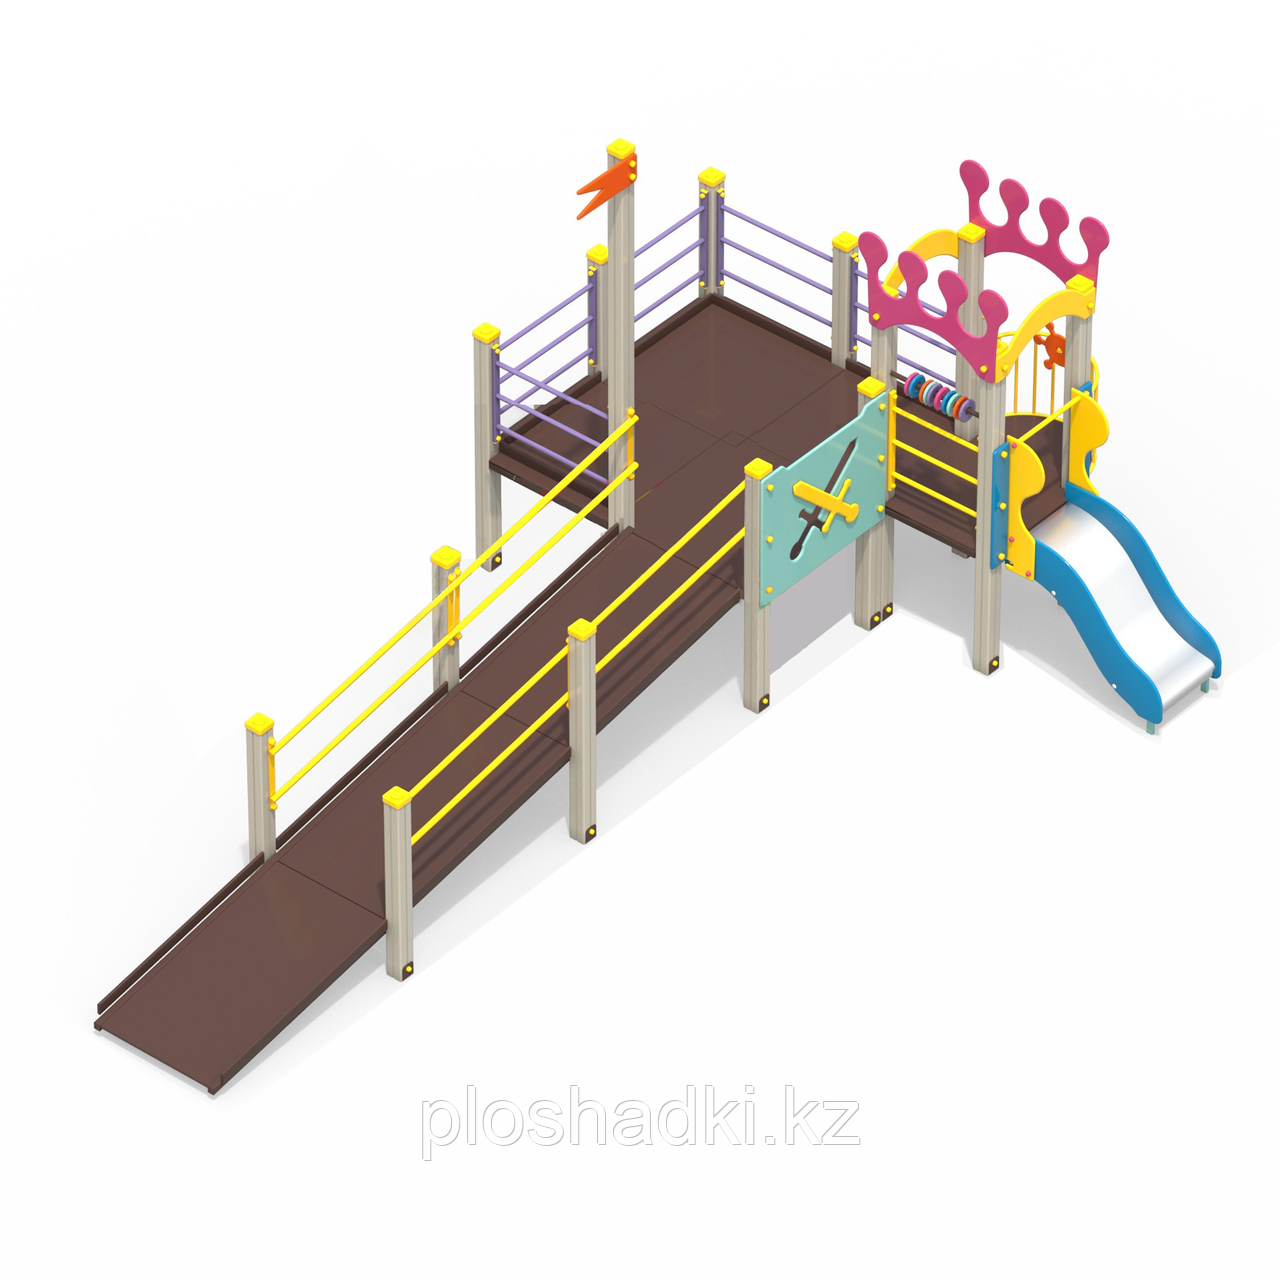 Детская площадка для детей с ограниченными возможностями Корона (Арт. 2200-1)